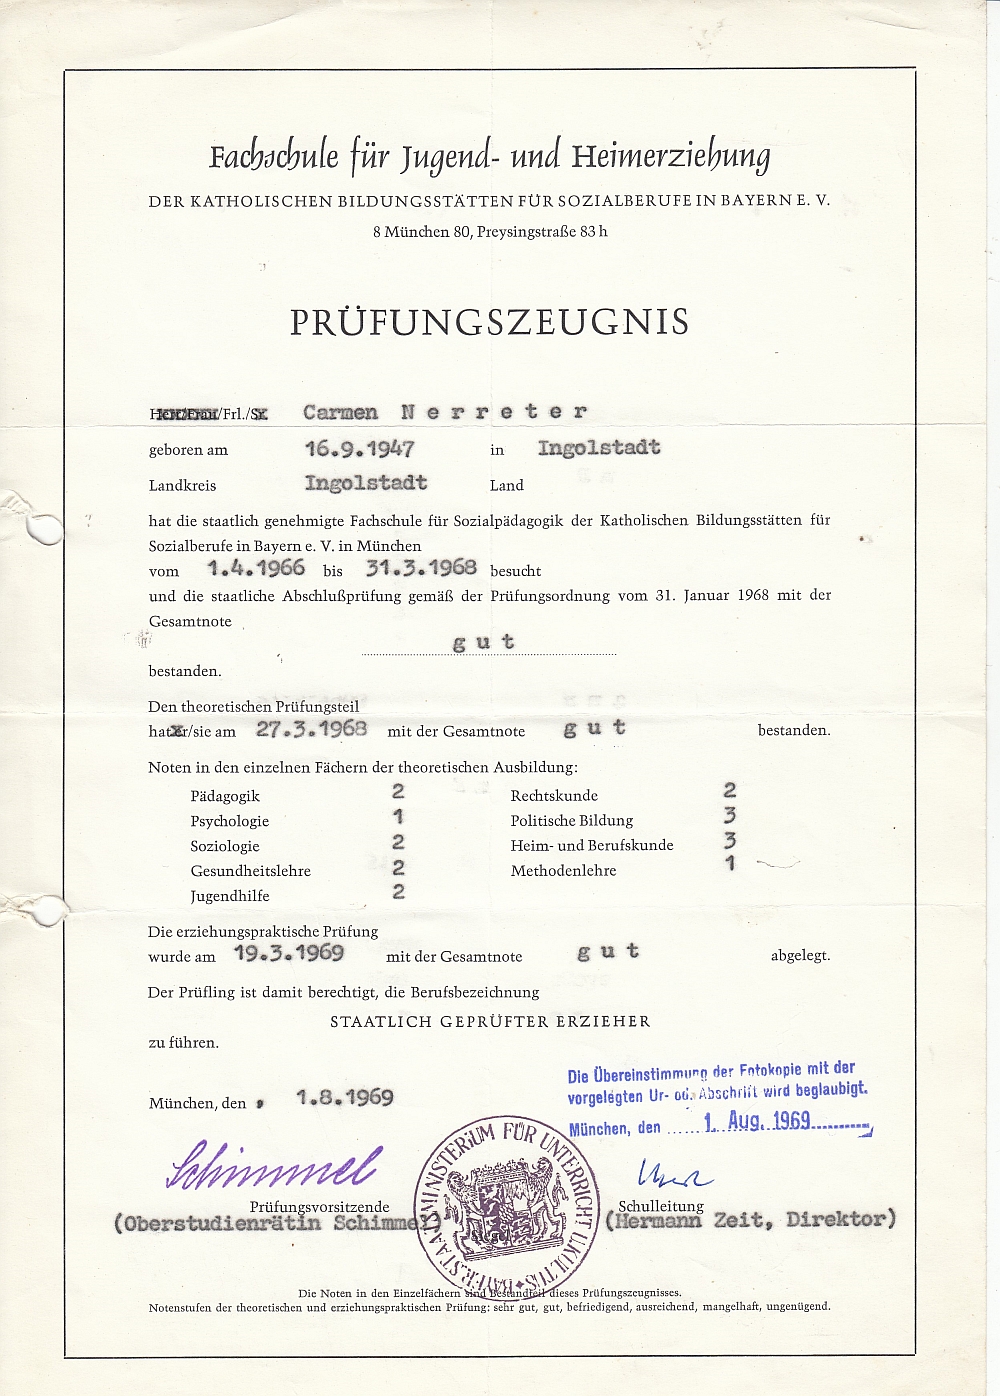 Abschlusszeugnis der Fachschule für Jugend und Heimerziehung in München Quelle Ida Seele ArchivTräger